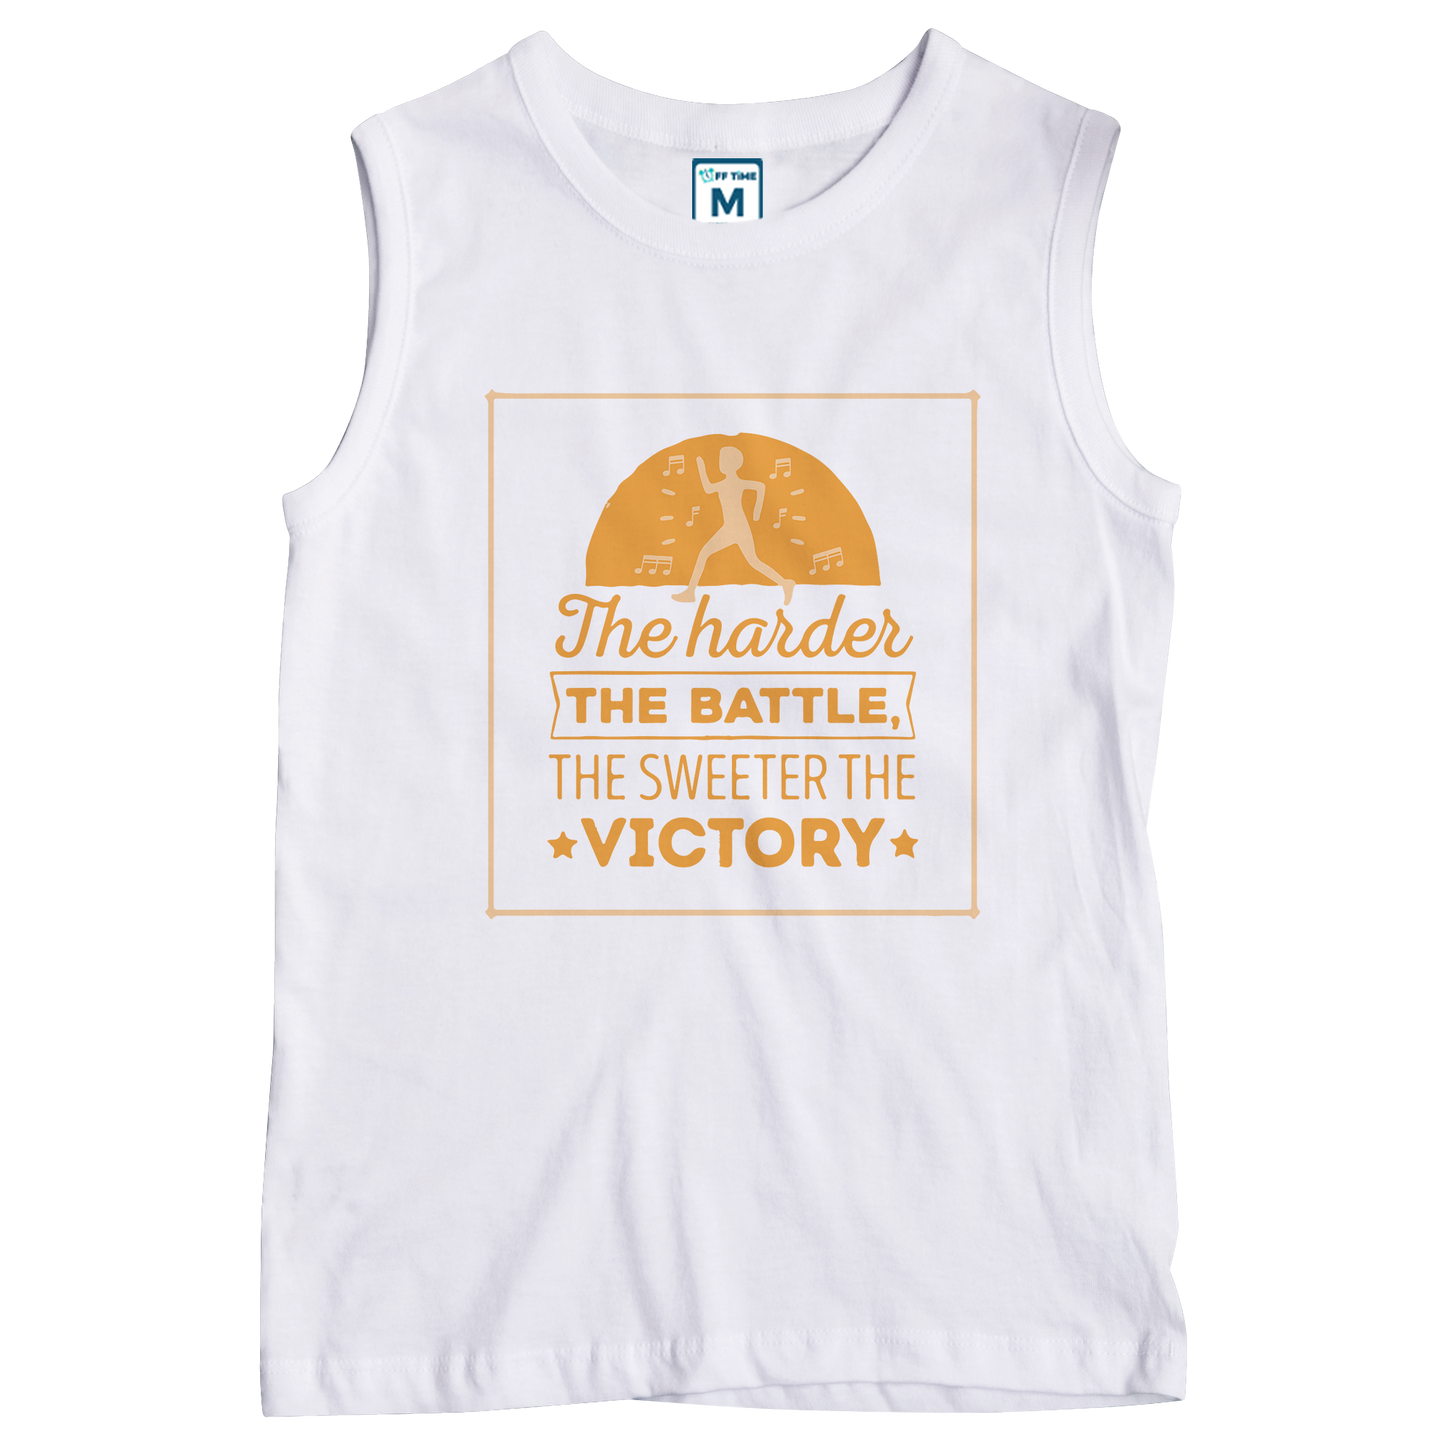 Sleeveless Drifit Shirt: Battle Victory